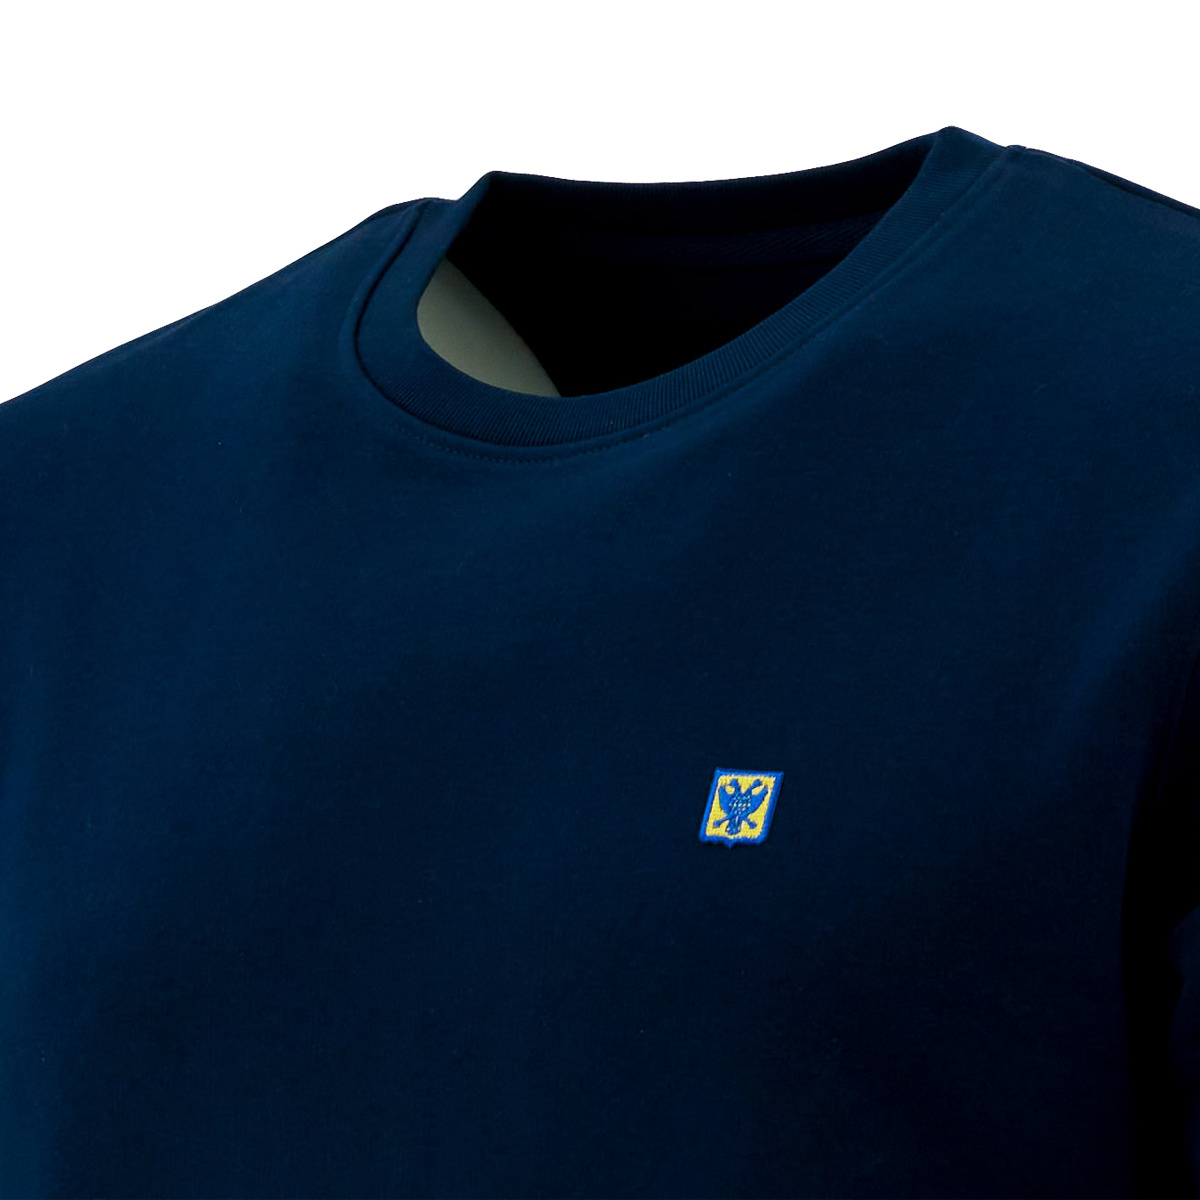 Topfanz Sweater dark blue embroidered club logo